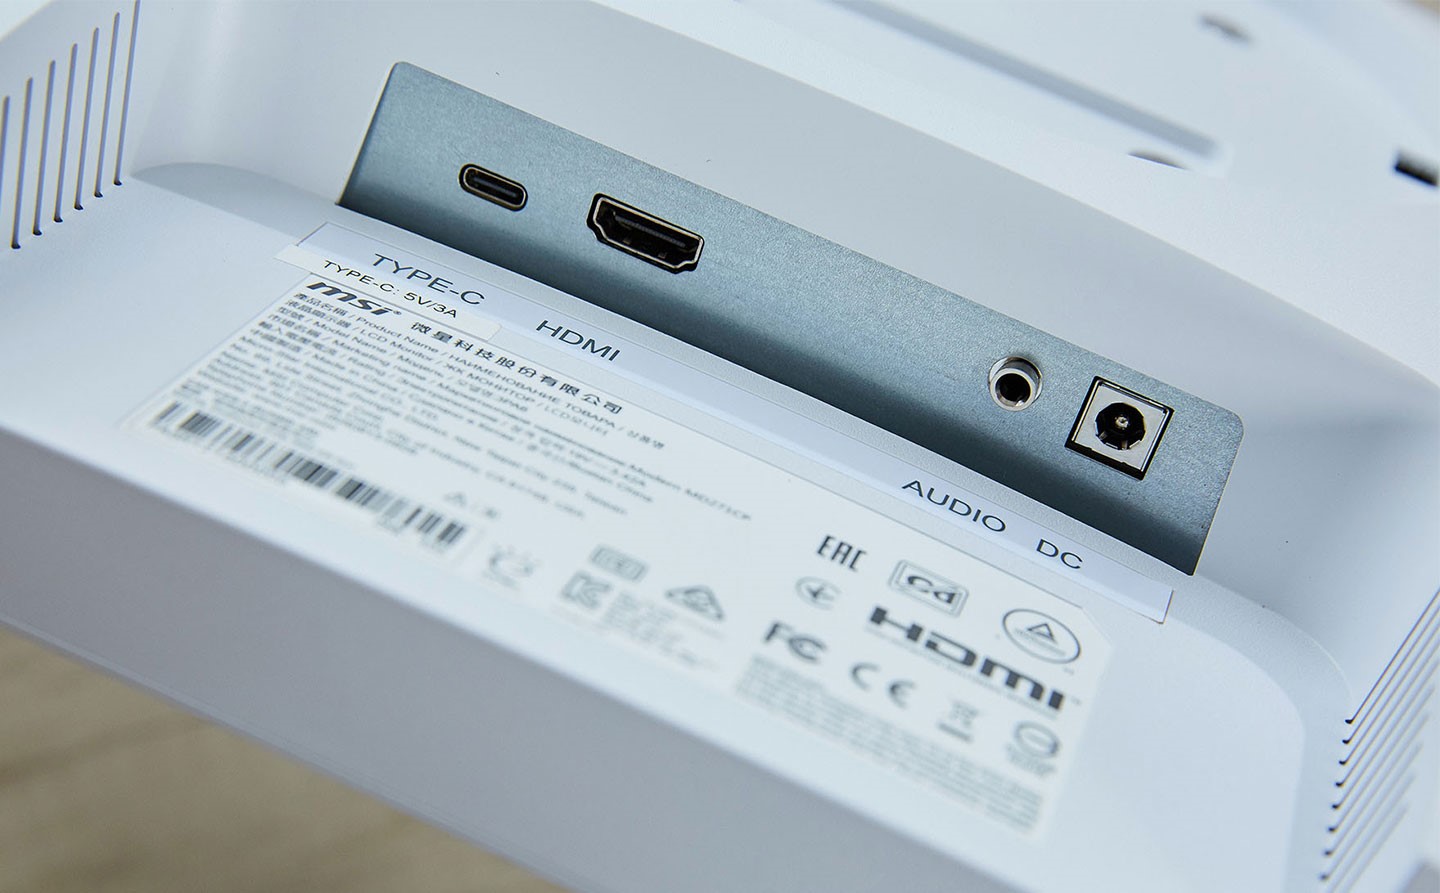 Modern MD271CPW 規劃了 HDMI 與 USB-C 兩種視訊介面，同時也提供 3.5 mm 的音源輸出與電源連接。